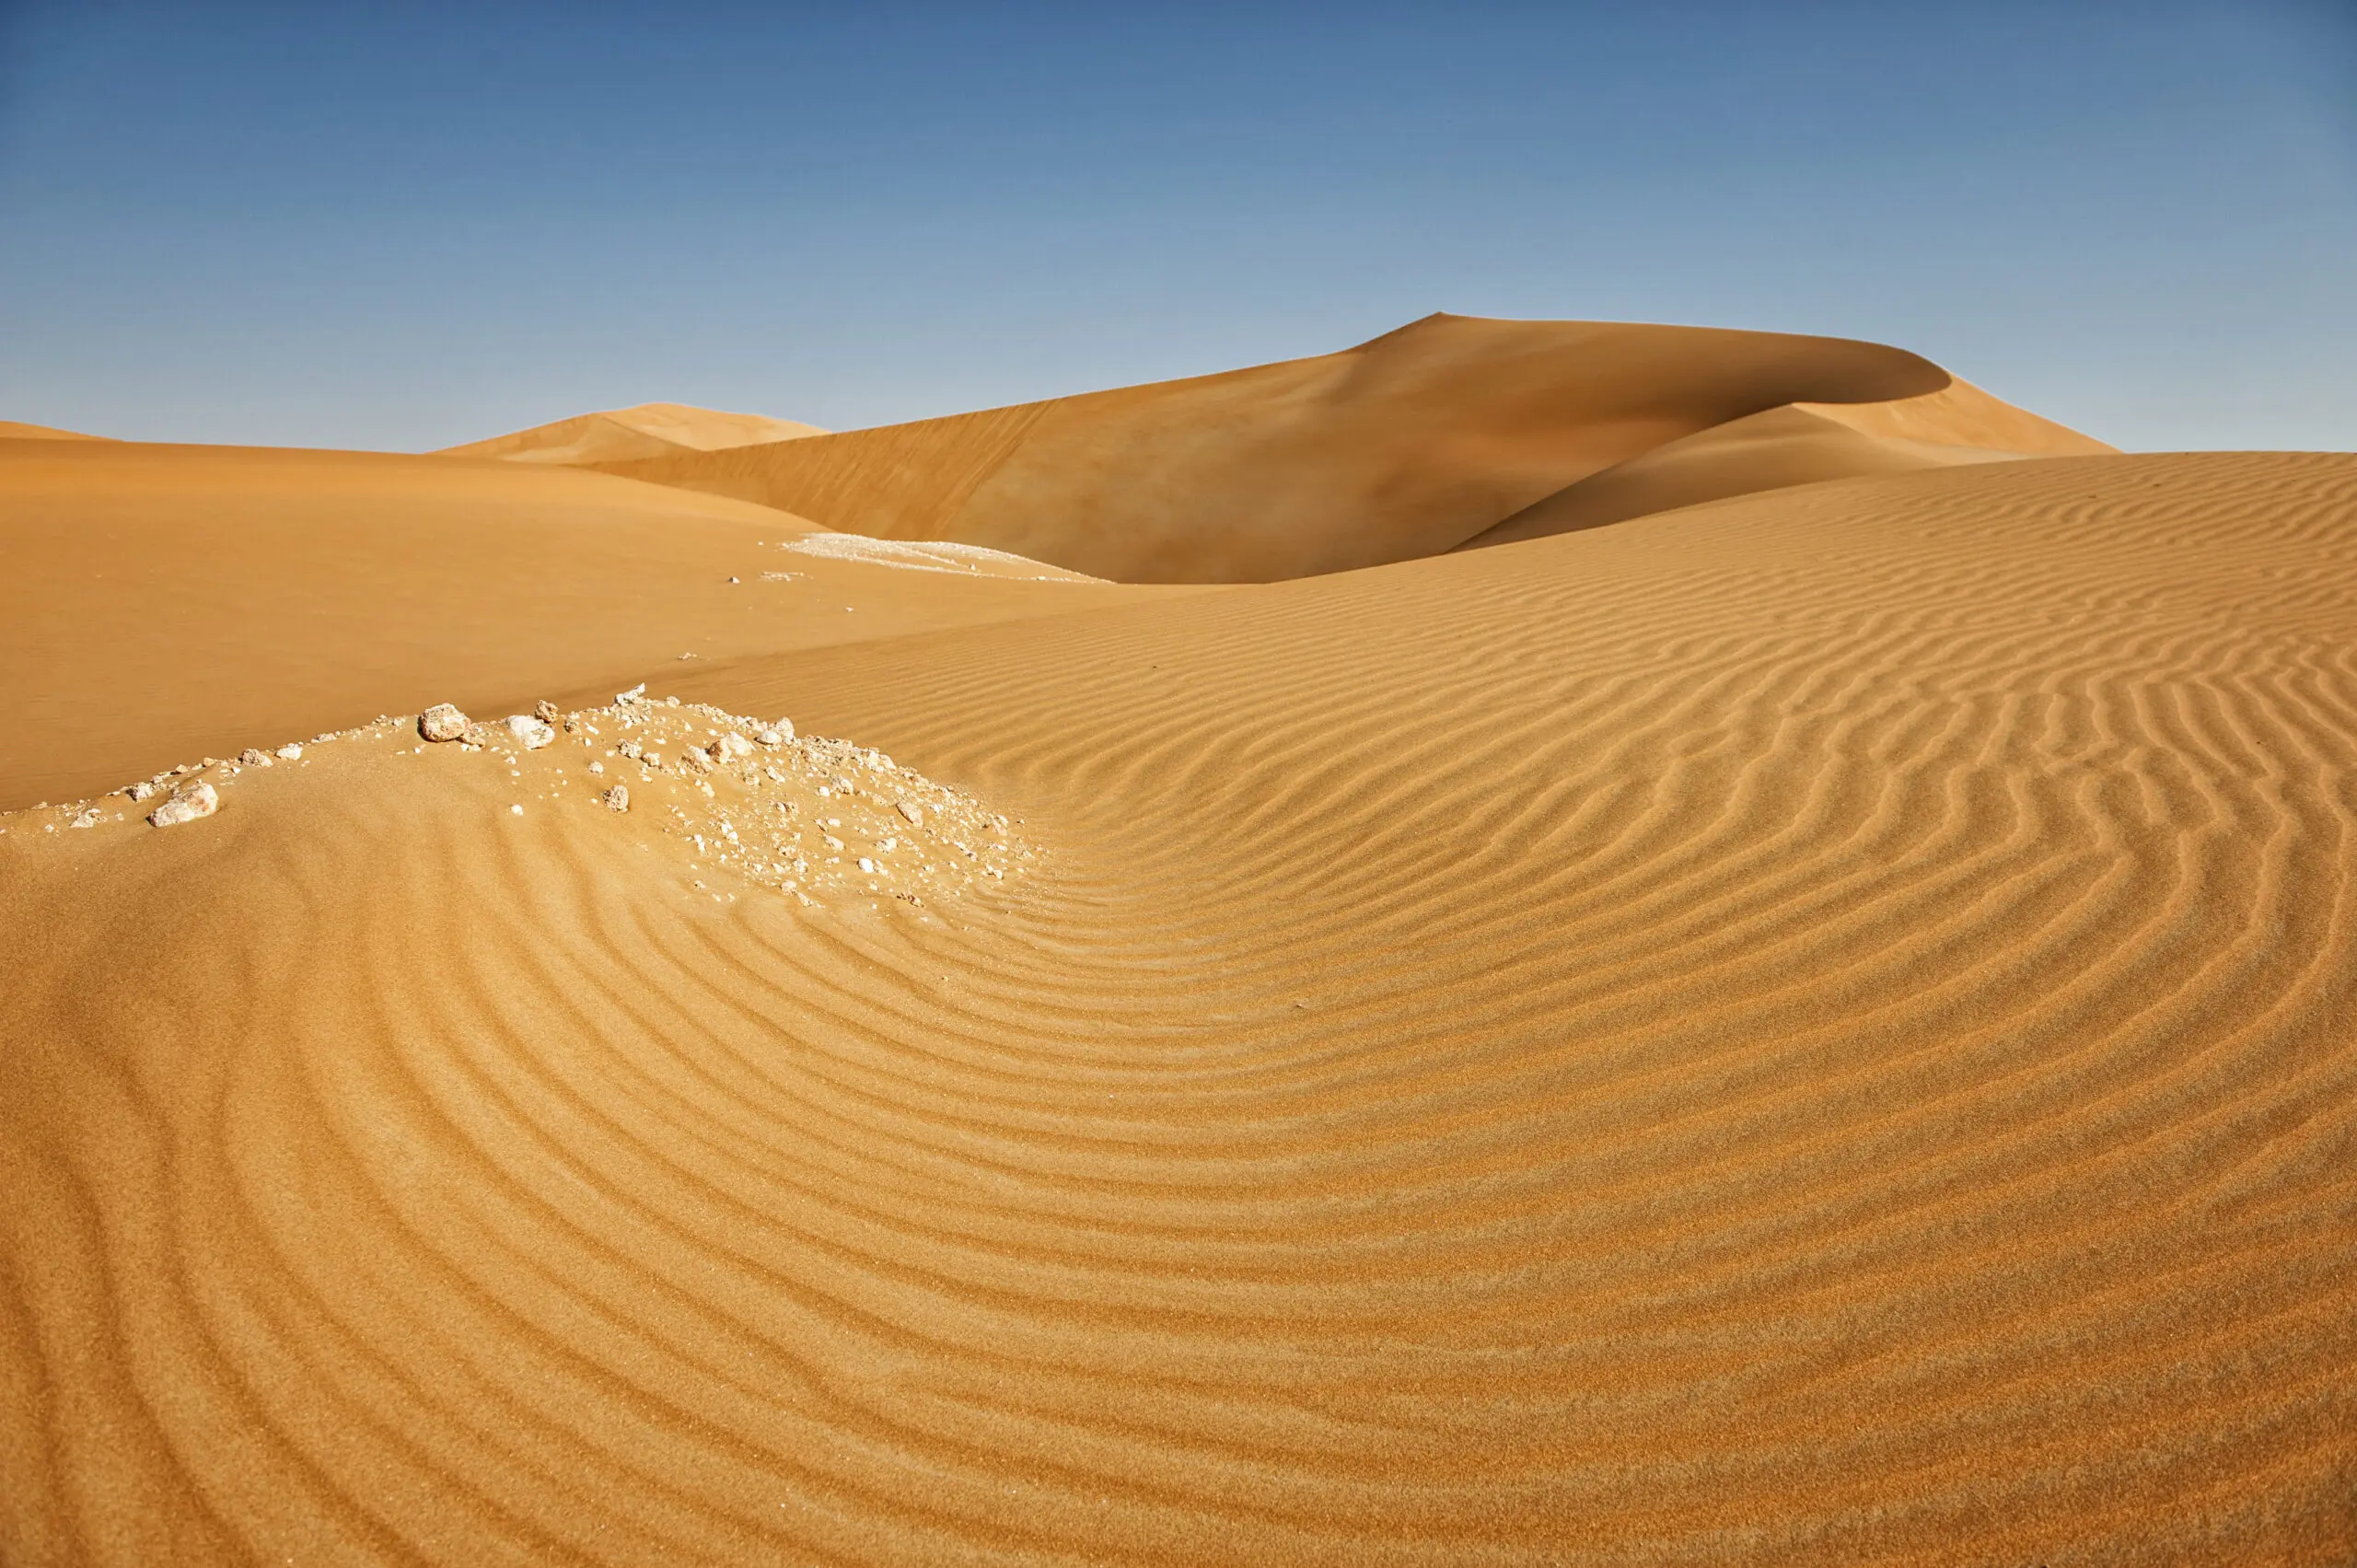 Wandbild (4685) Robertz Mark -Wüste Rub al-Chali 2 präsentiert: Kreatives,Details und Strukturen,Abstrakt,Landschaften,Wüste,Asien,Sonstiges Kreatives,Steine,Sonstige Naturdetails,Erde